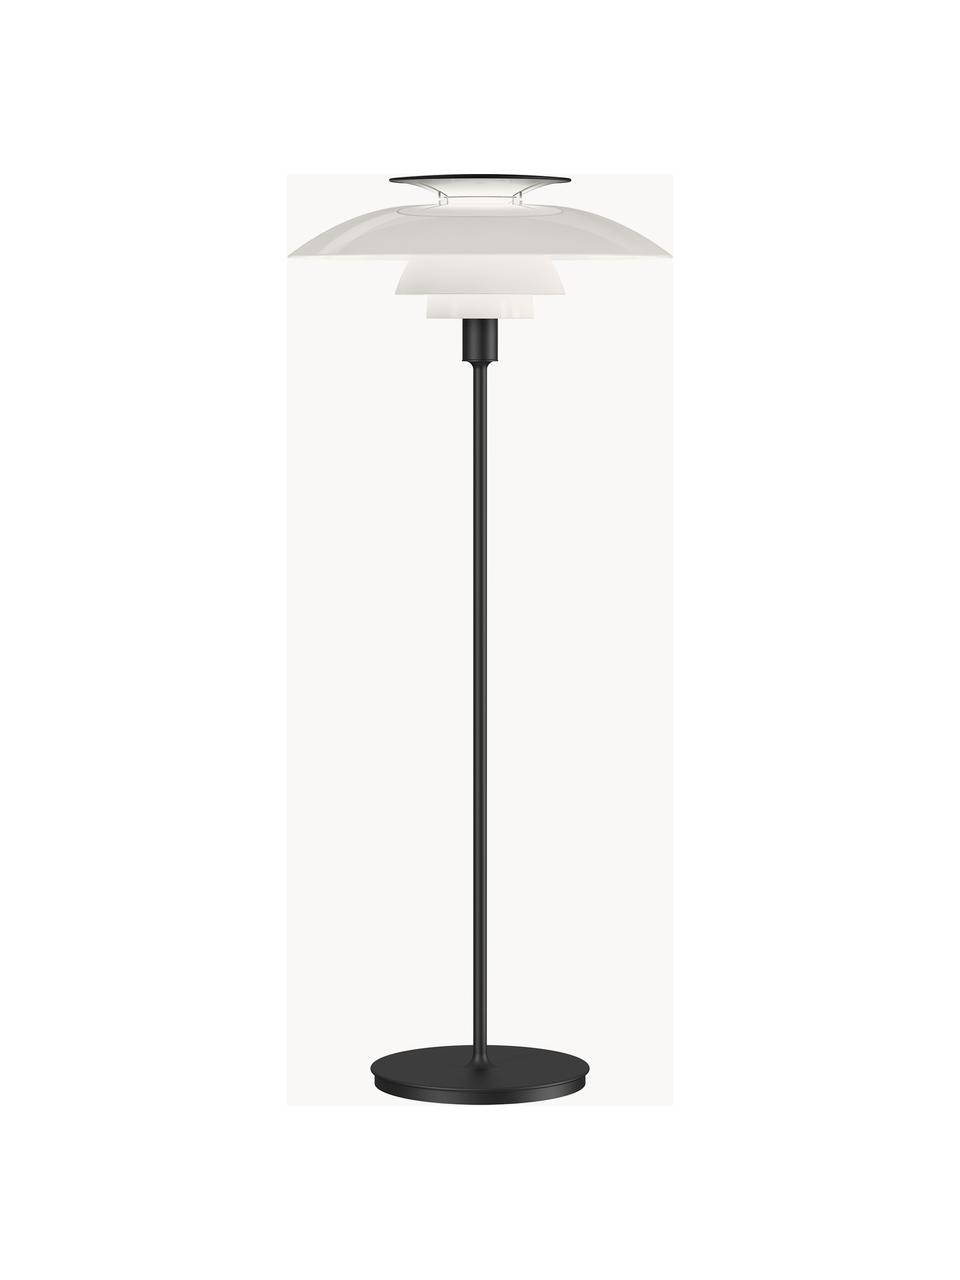 Kleine dimmbare Stehlampe PH 80, Lampenschirm: Acrylglas, Polycarbonat, Lampenfuß: ABS, Schwarz, Weiß, H 132 cm